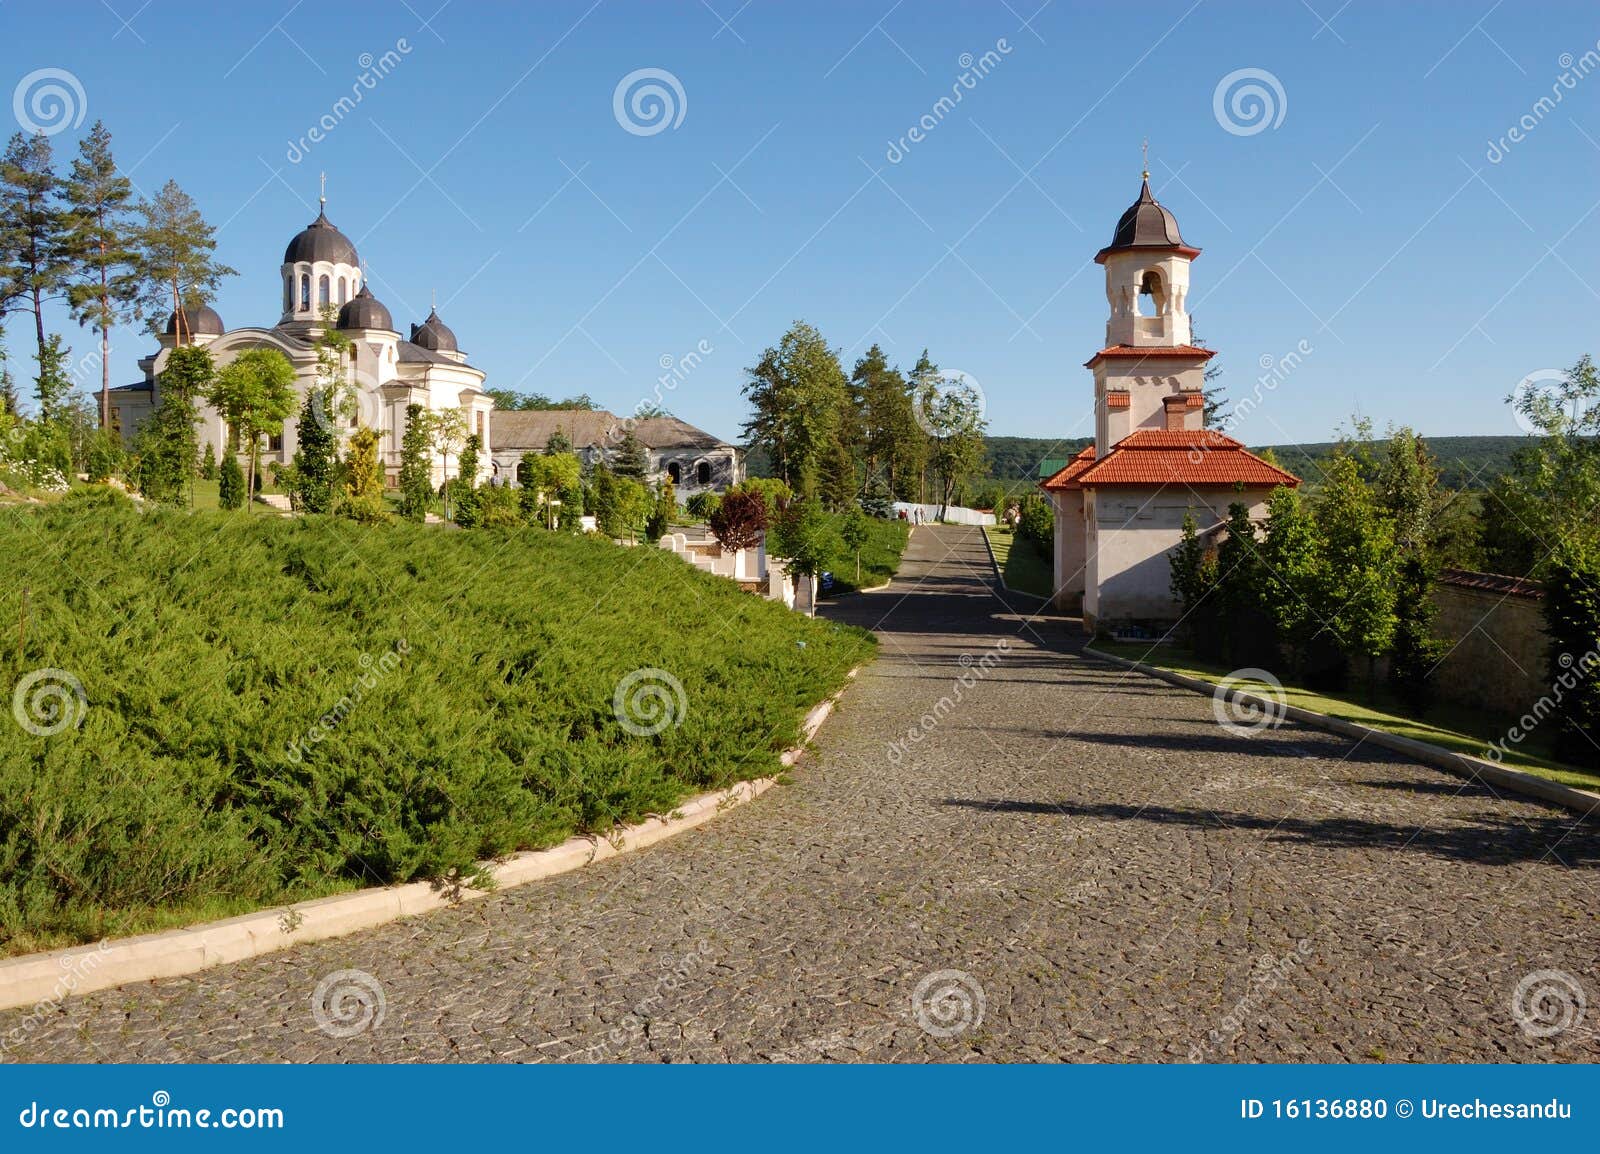 curchi monastery in moldova